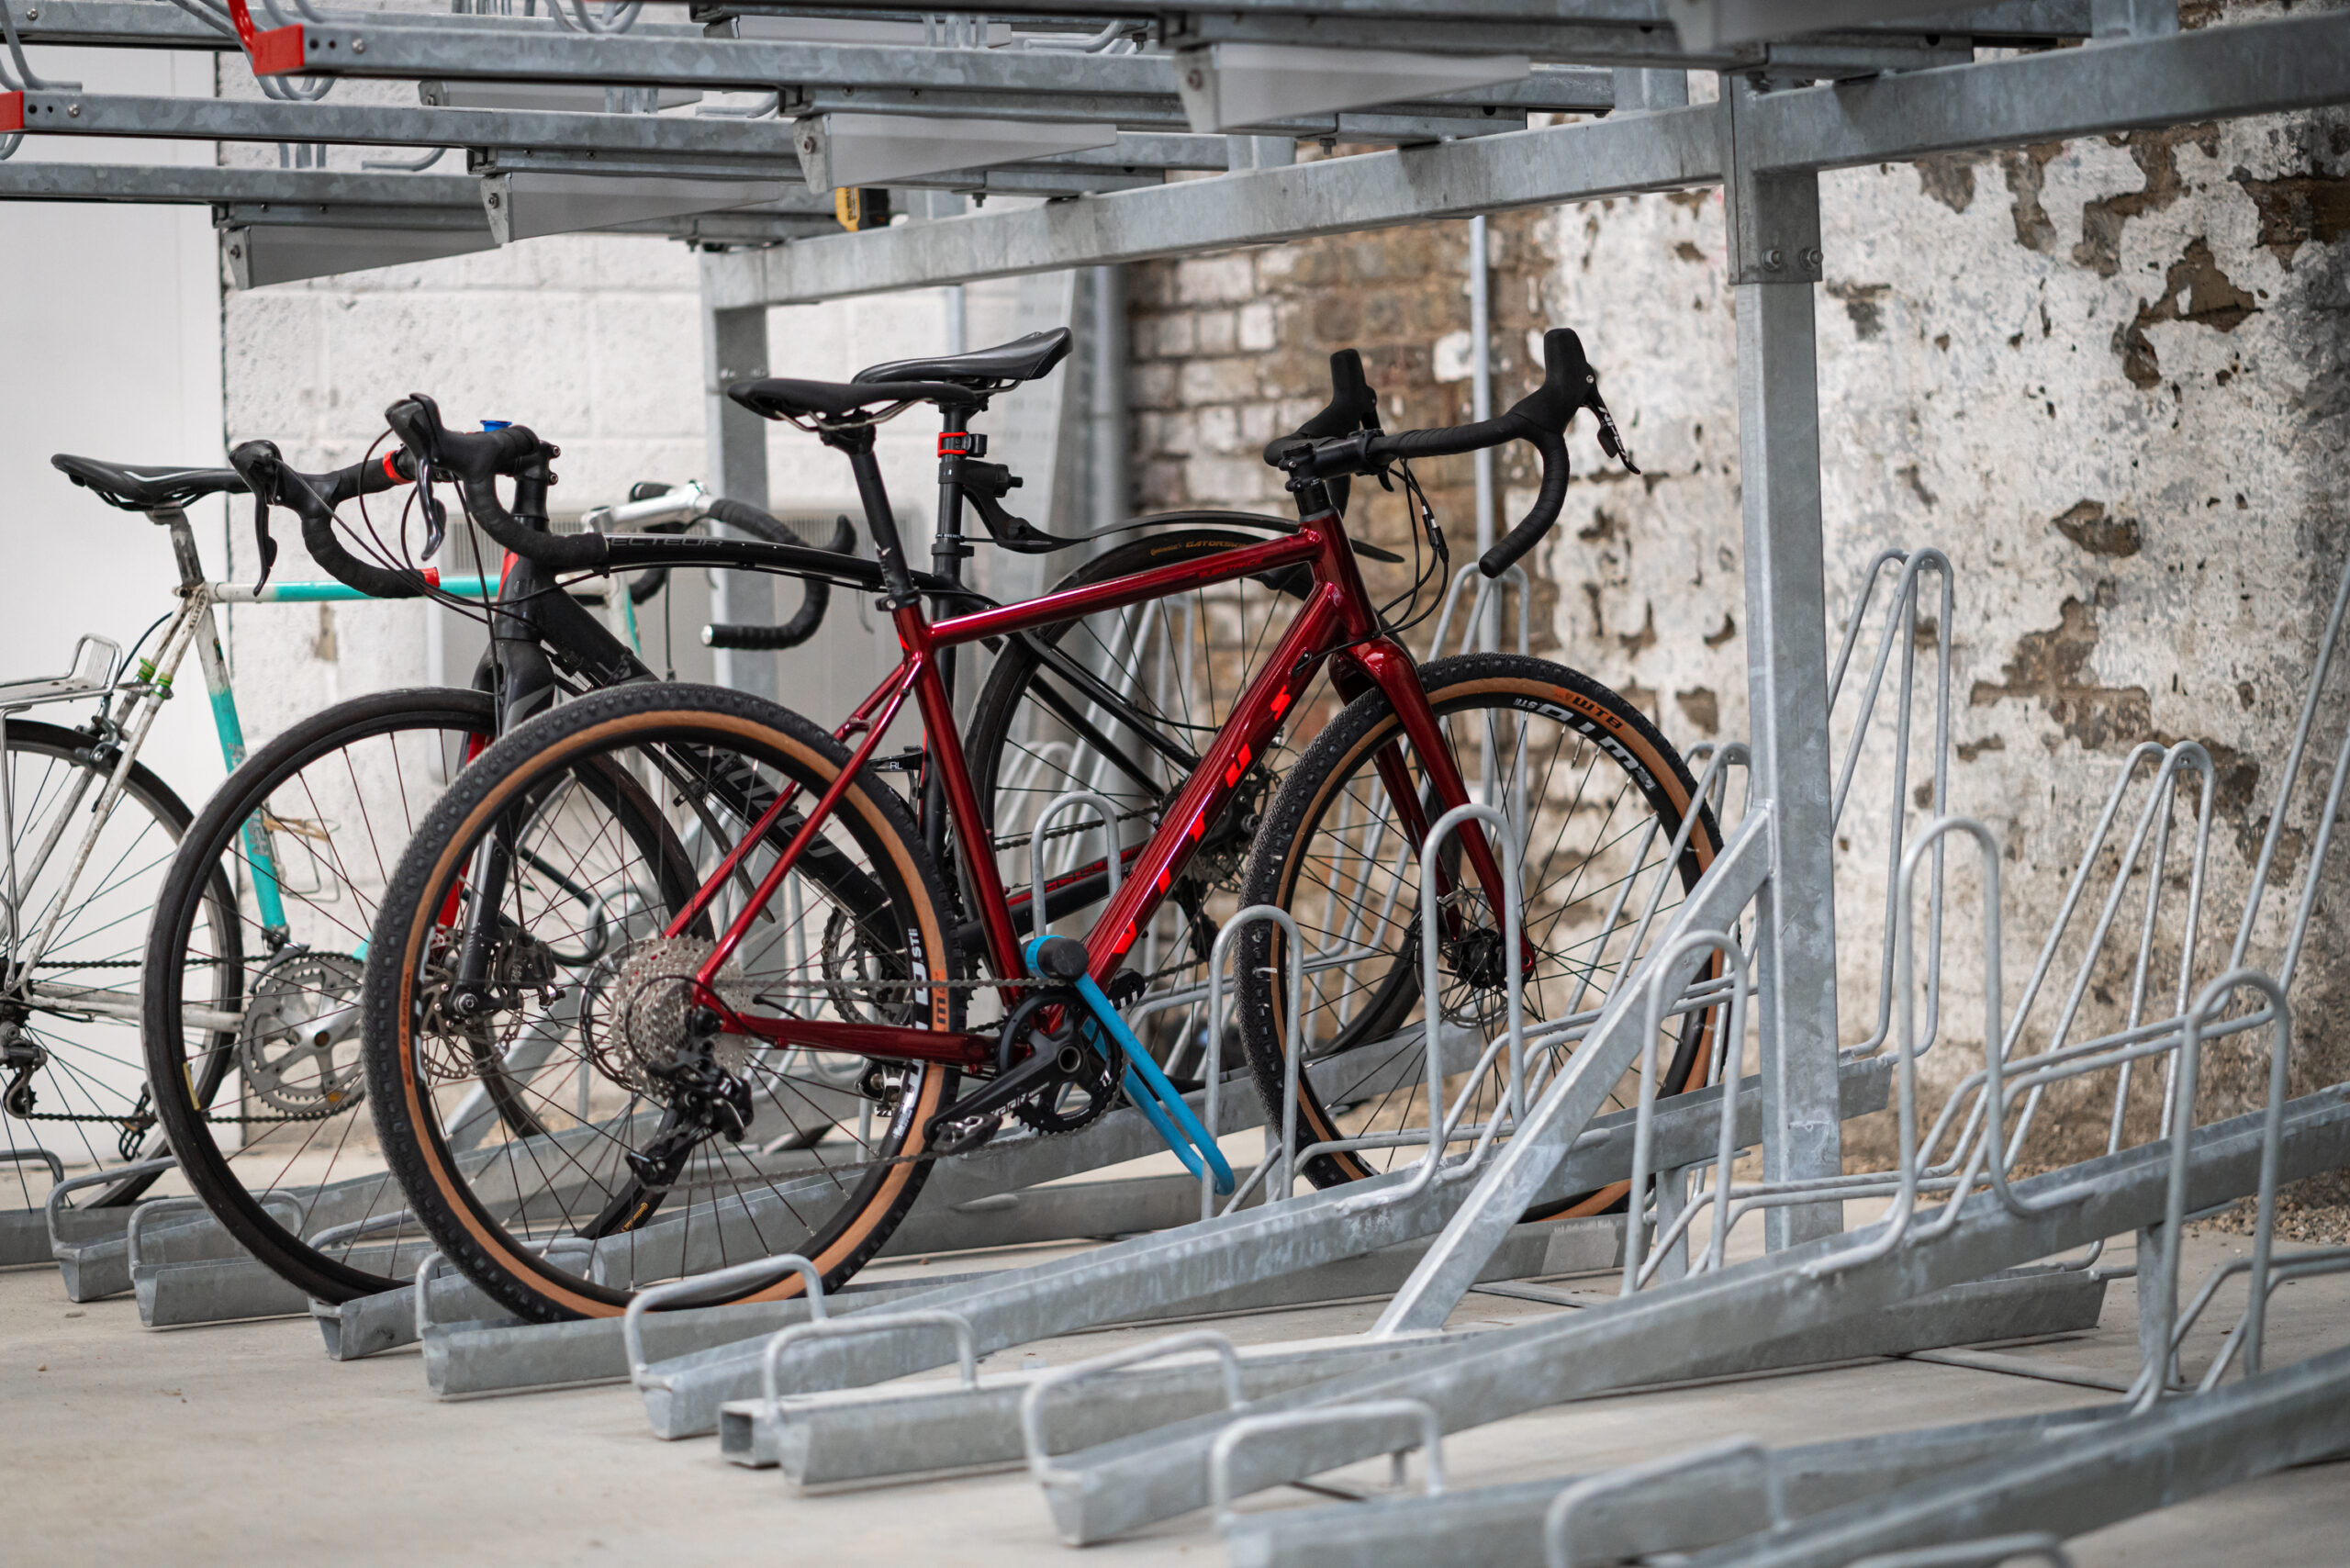 Two-Tier Bike Rack